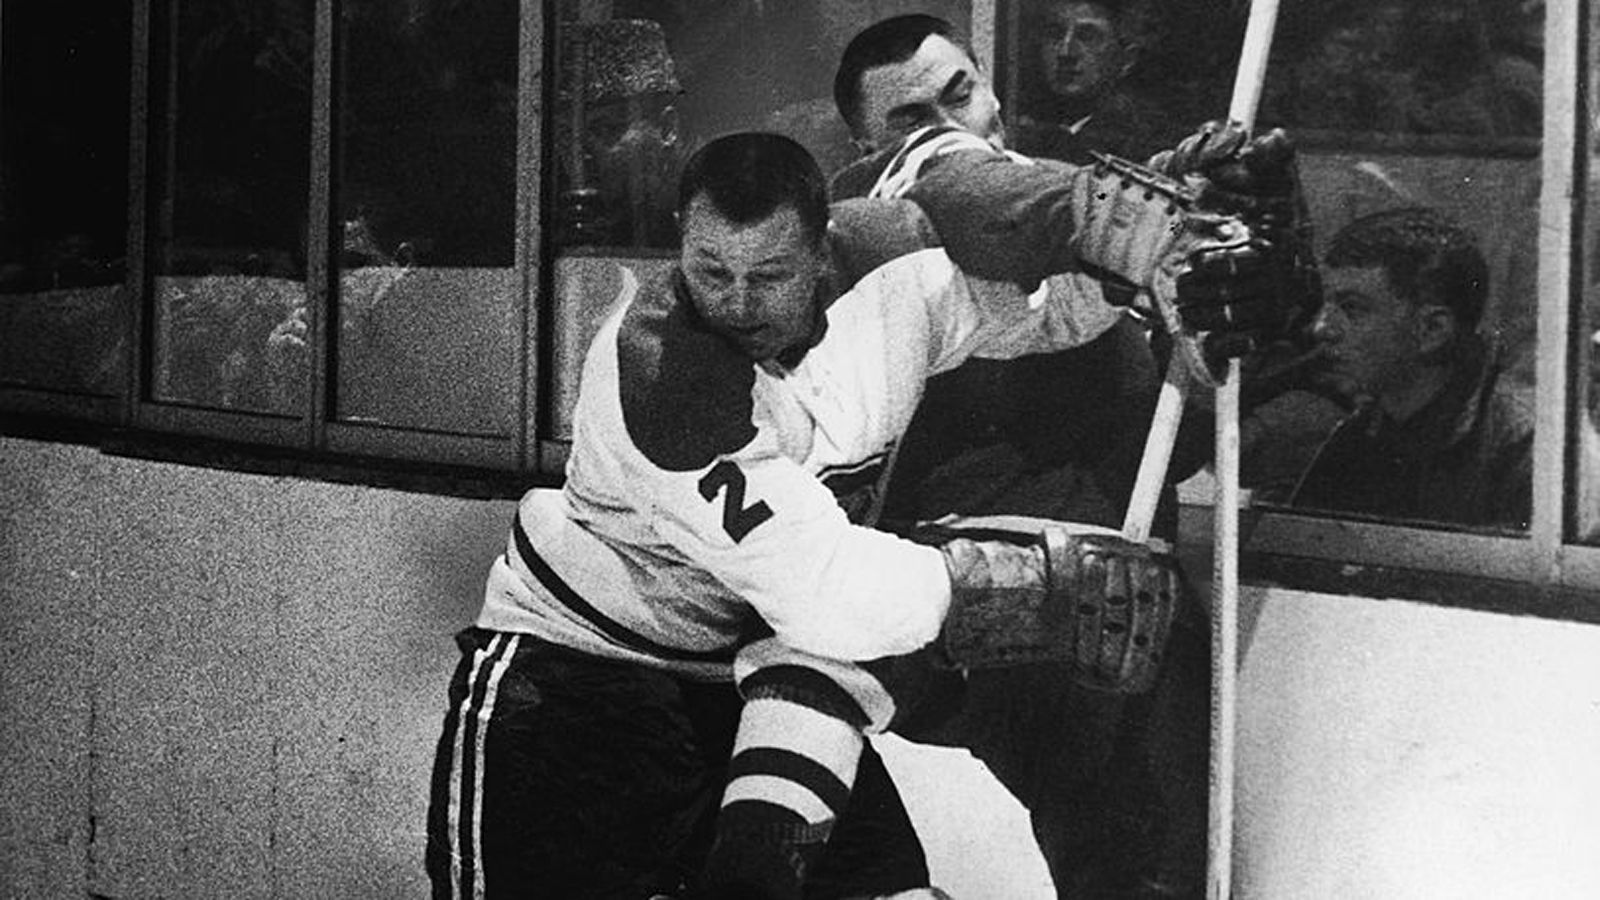 
                <strong>Platz 5: Doug Harvey</strong><br>
                &#x2022; Alter beim letzten NHL-Spiel: 44 Jahre, 100 Tage -<br>&#x2022; Letztes NHL-Spiel im Jahre: 1969<br>
              